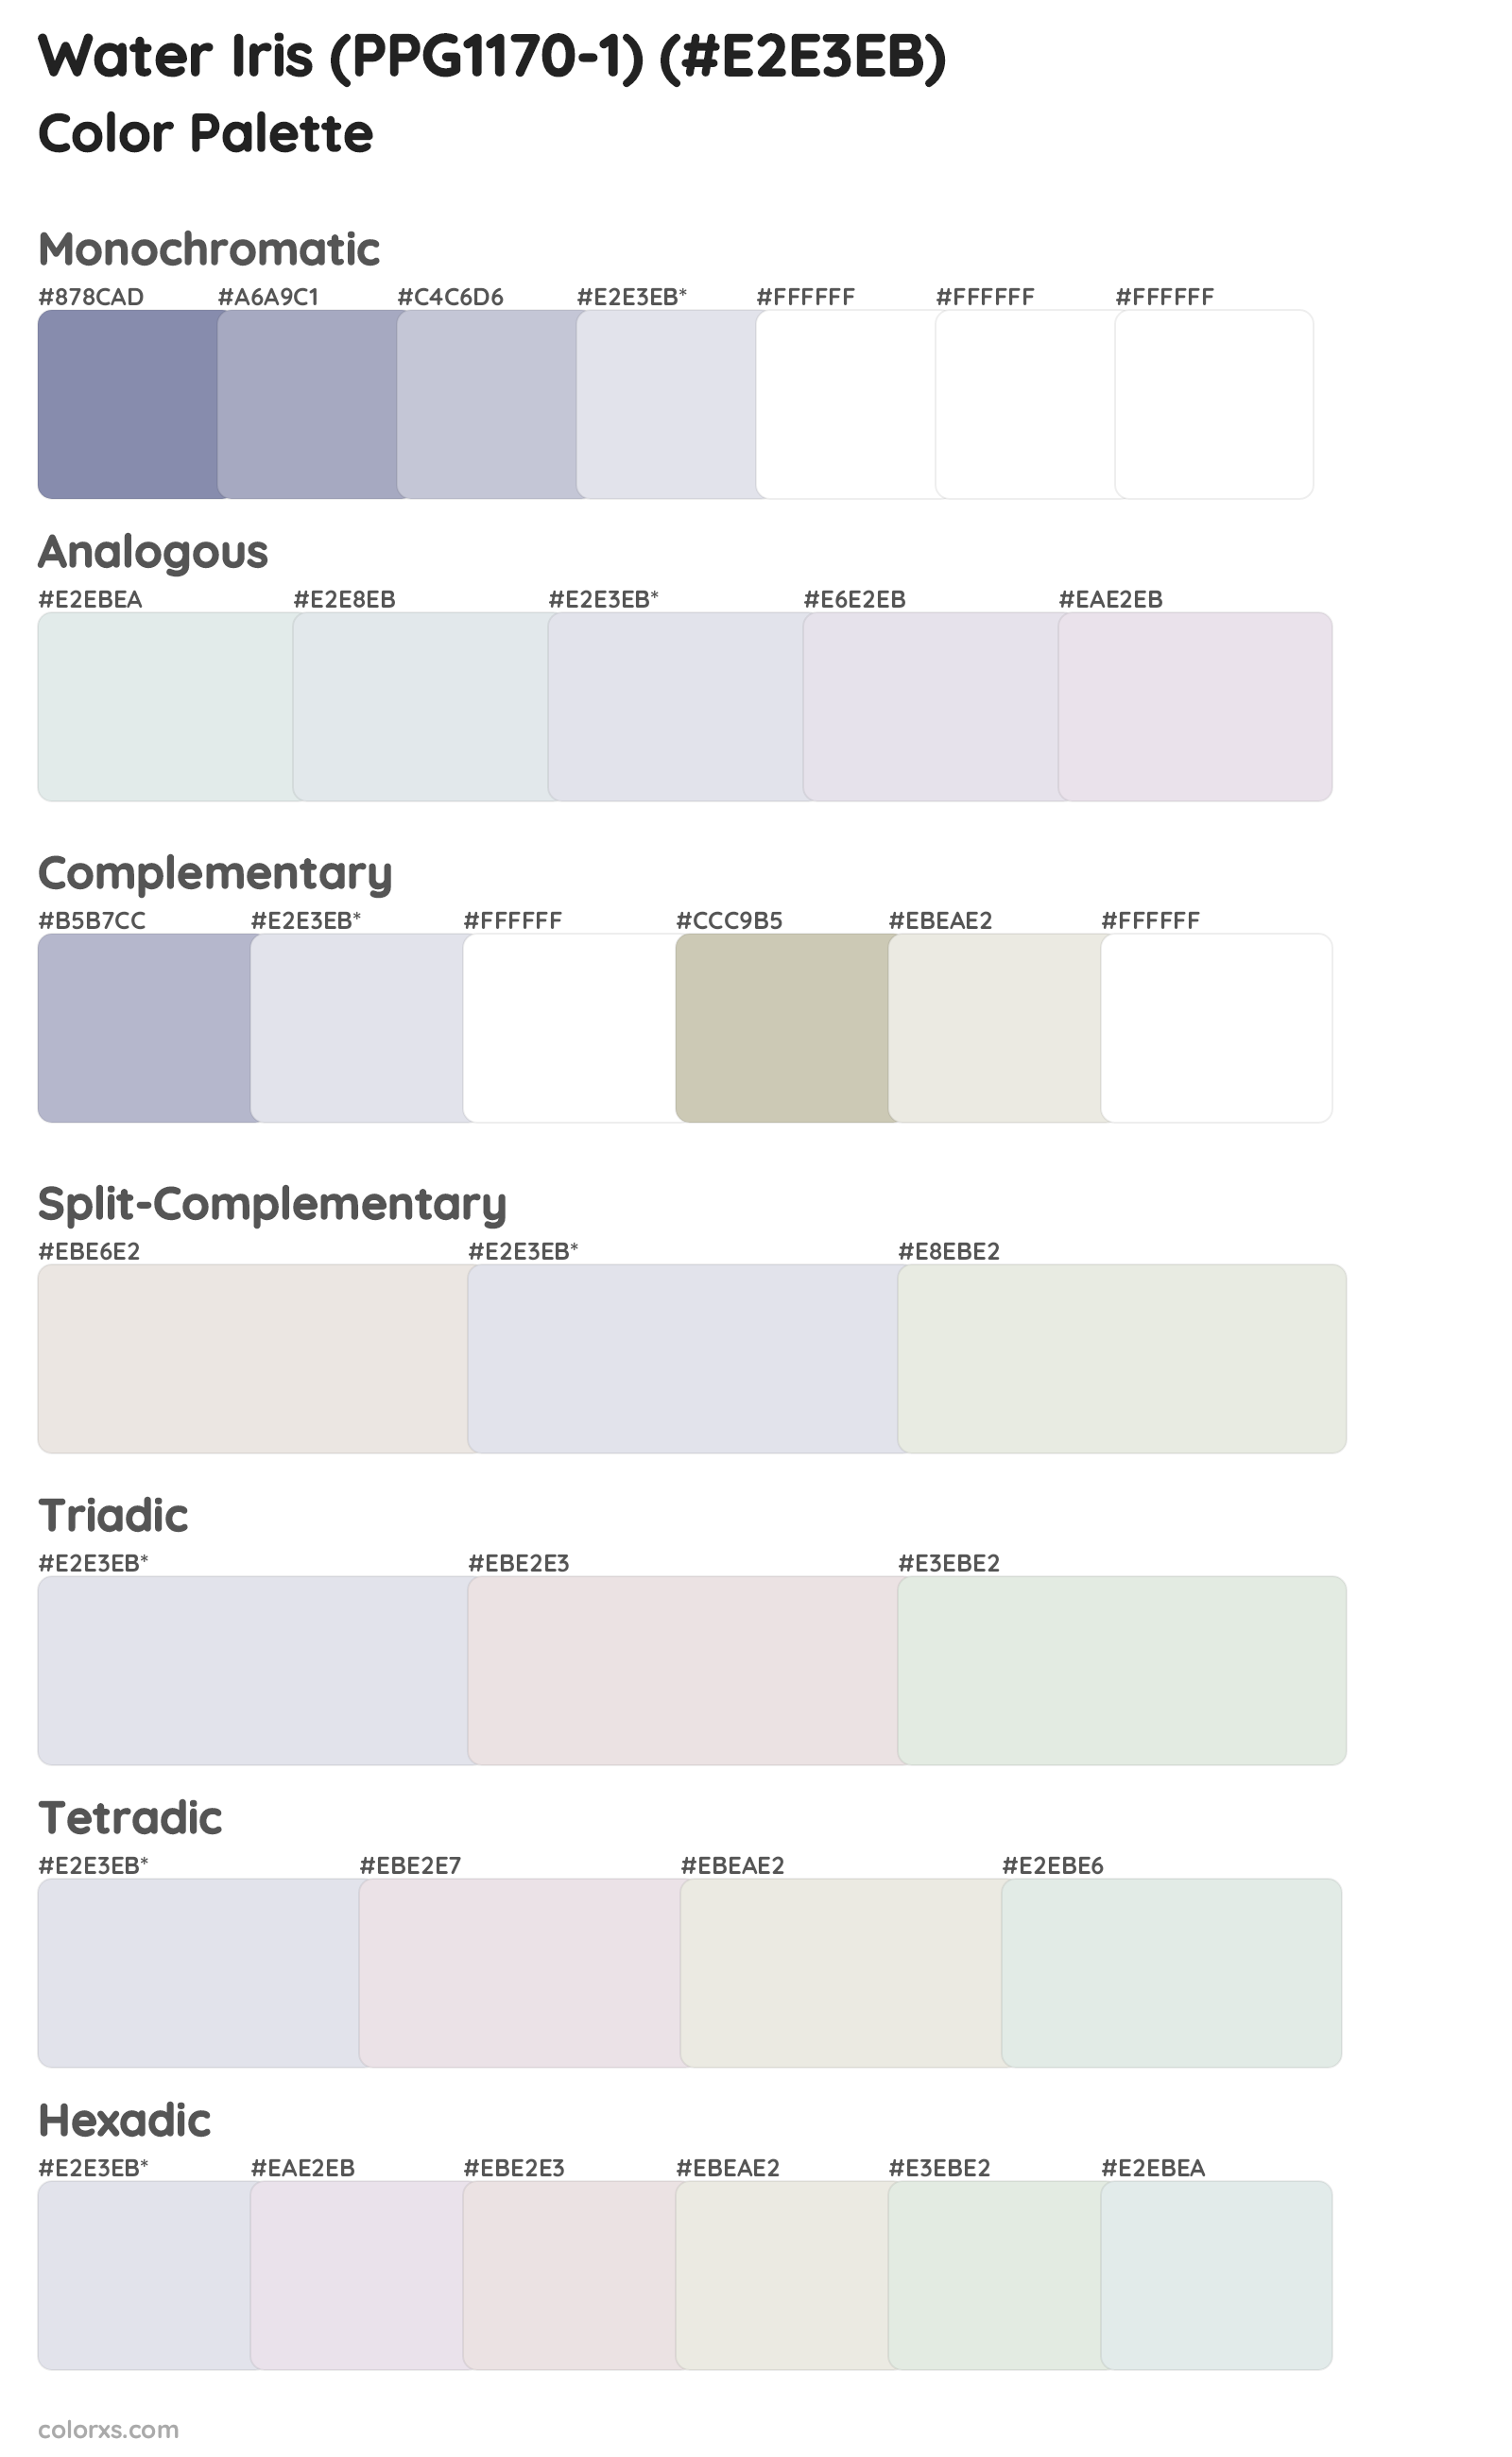 Water Iris (PPG1170-1) Color Scheme Palettes